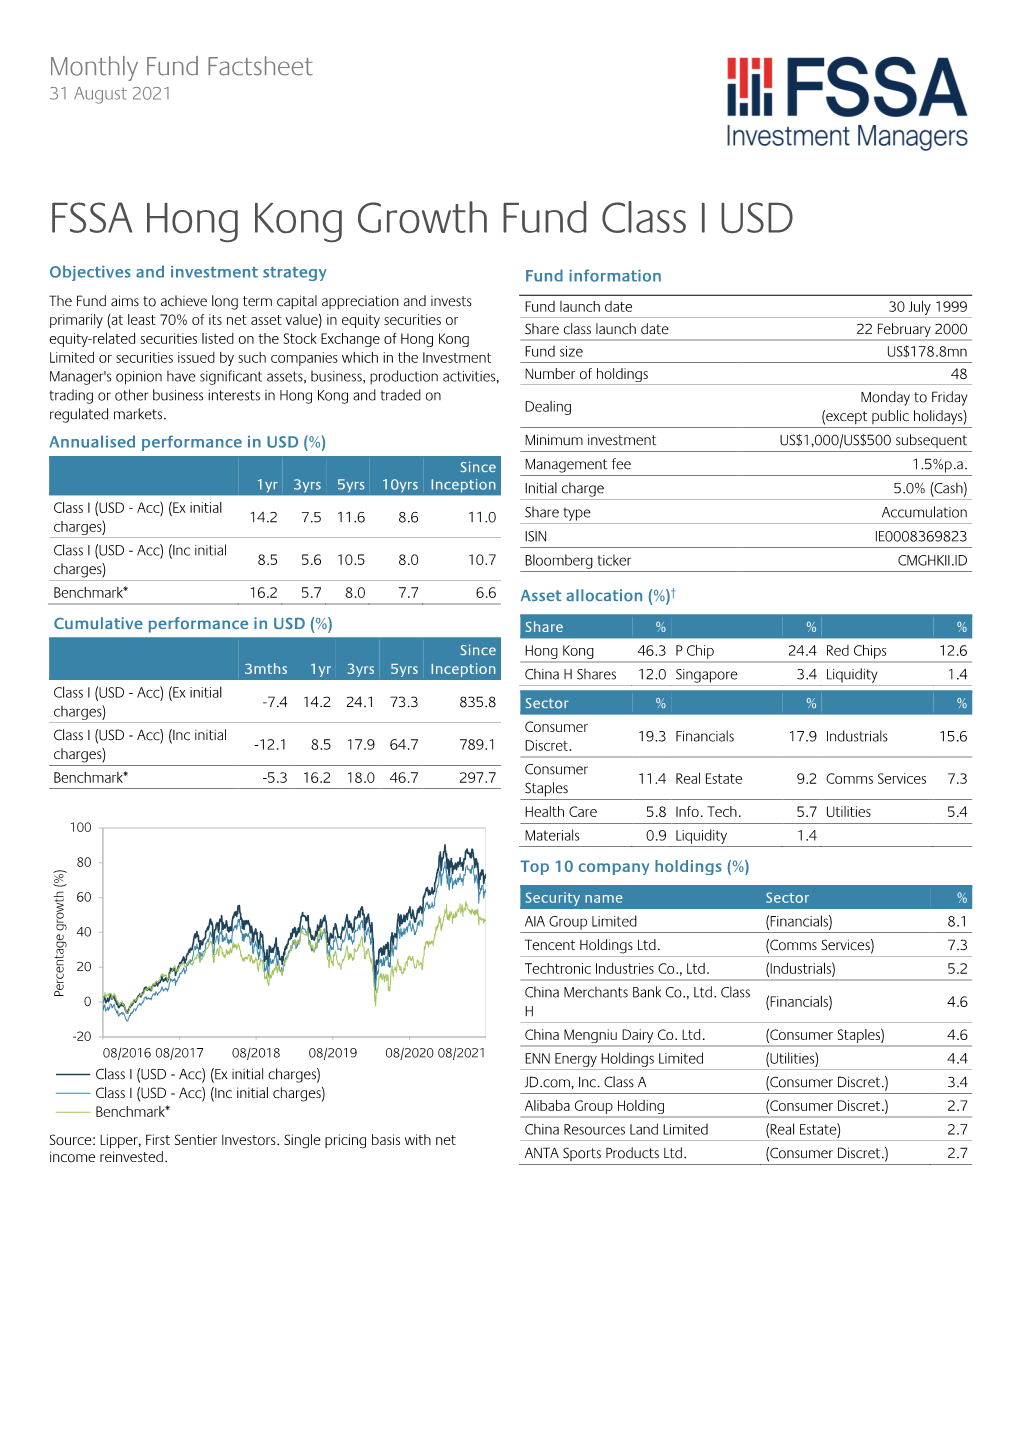 FSSA Hong Kong Growth Fund Class I USD